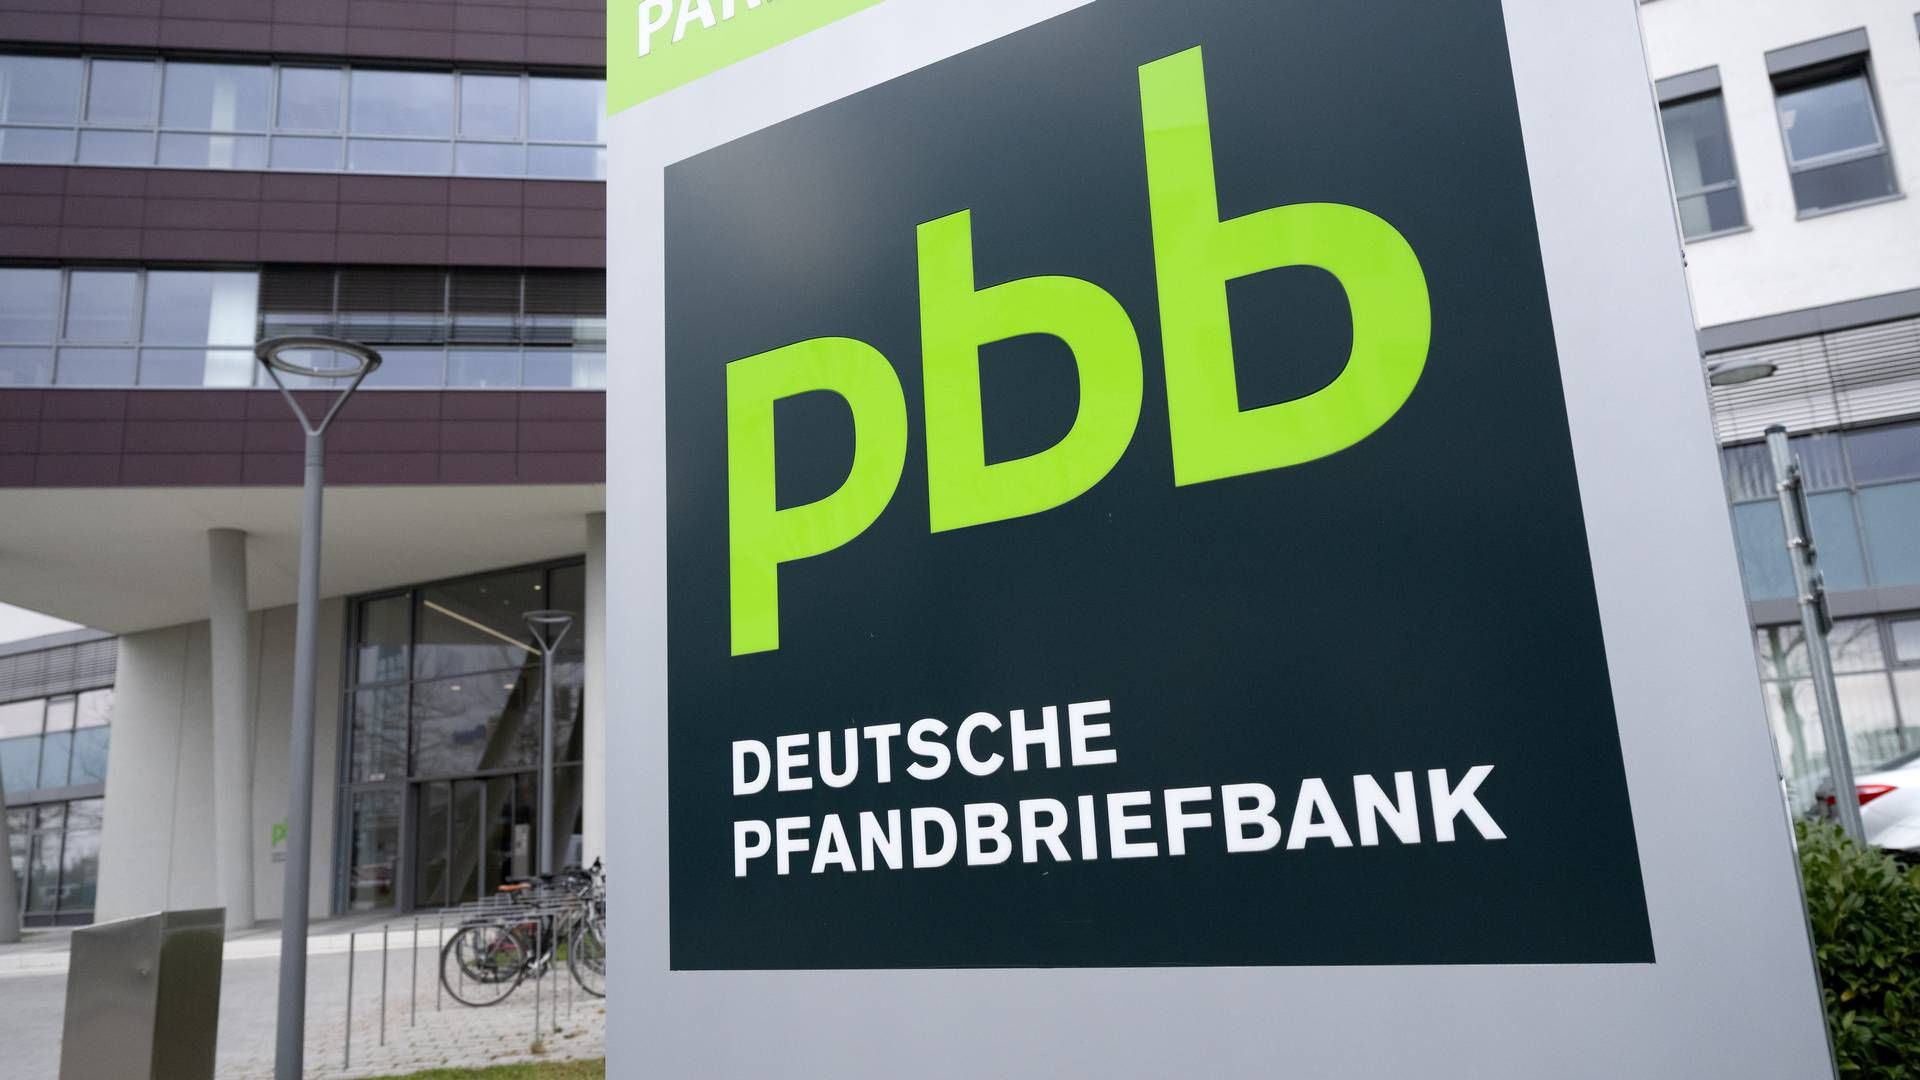 Die Pbb hat angekündigt, ihre Bilanz aktiver zu managen. Dazu trennt sie sich nun von einem Kreditportfolio. | Foto: picture alliance/dpa | Sven Hoppe